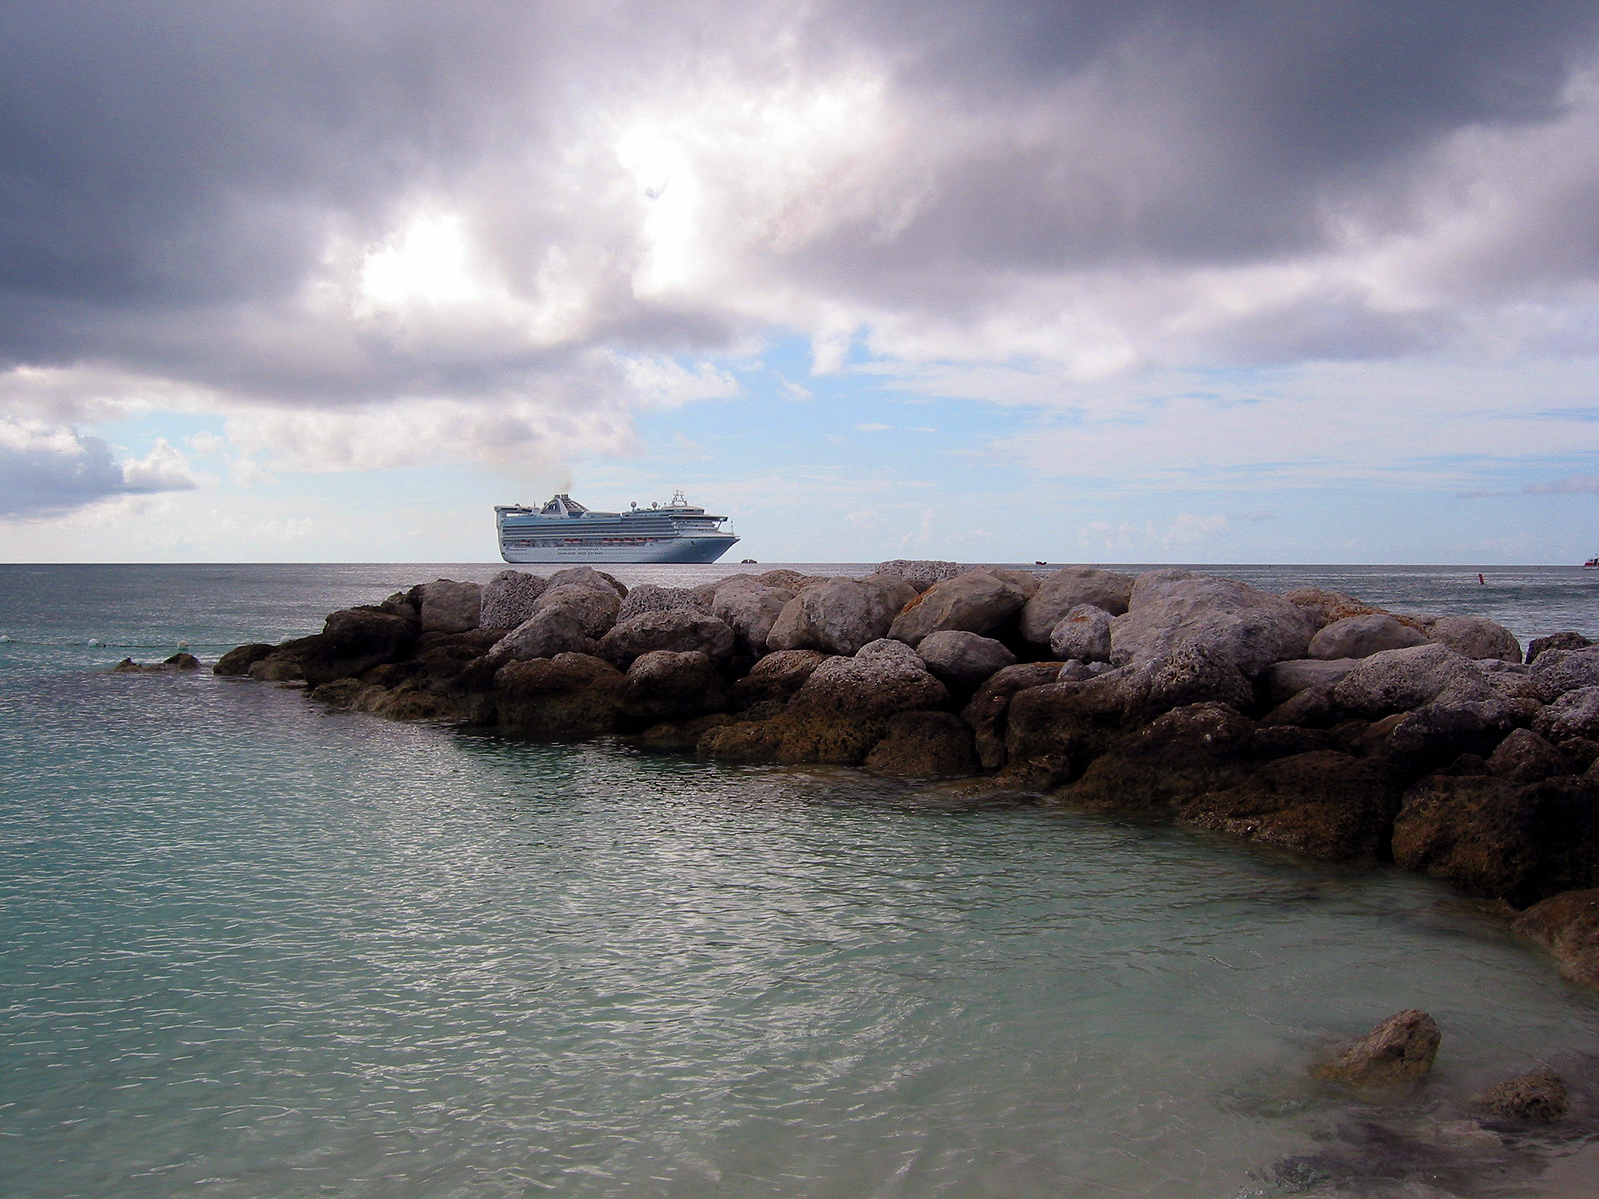 Cruise ship near the rocks photo